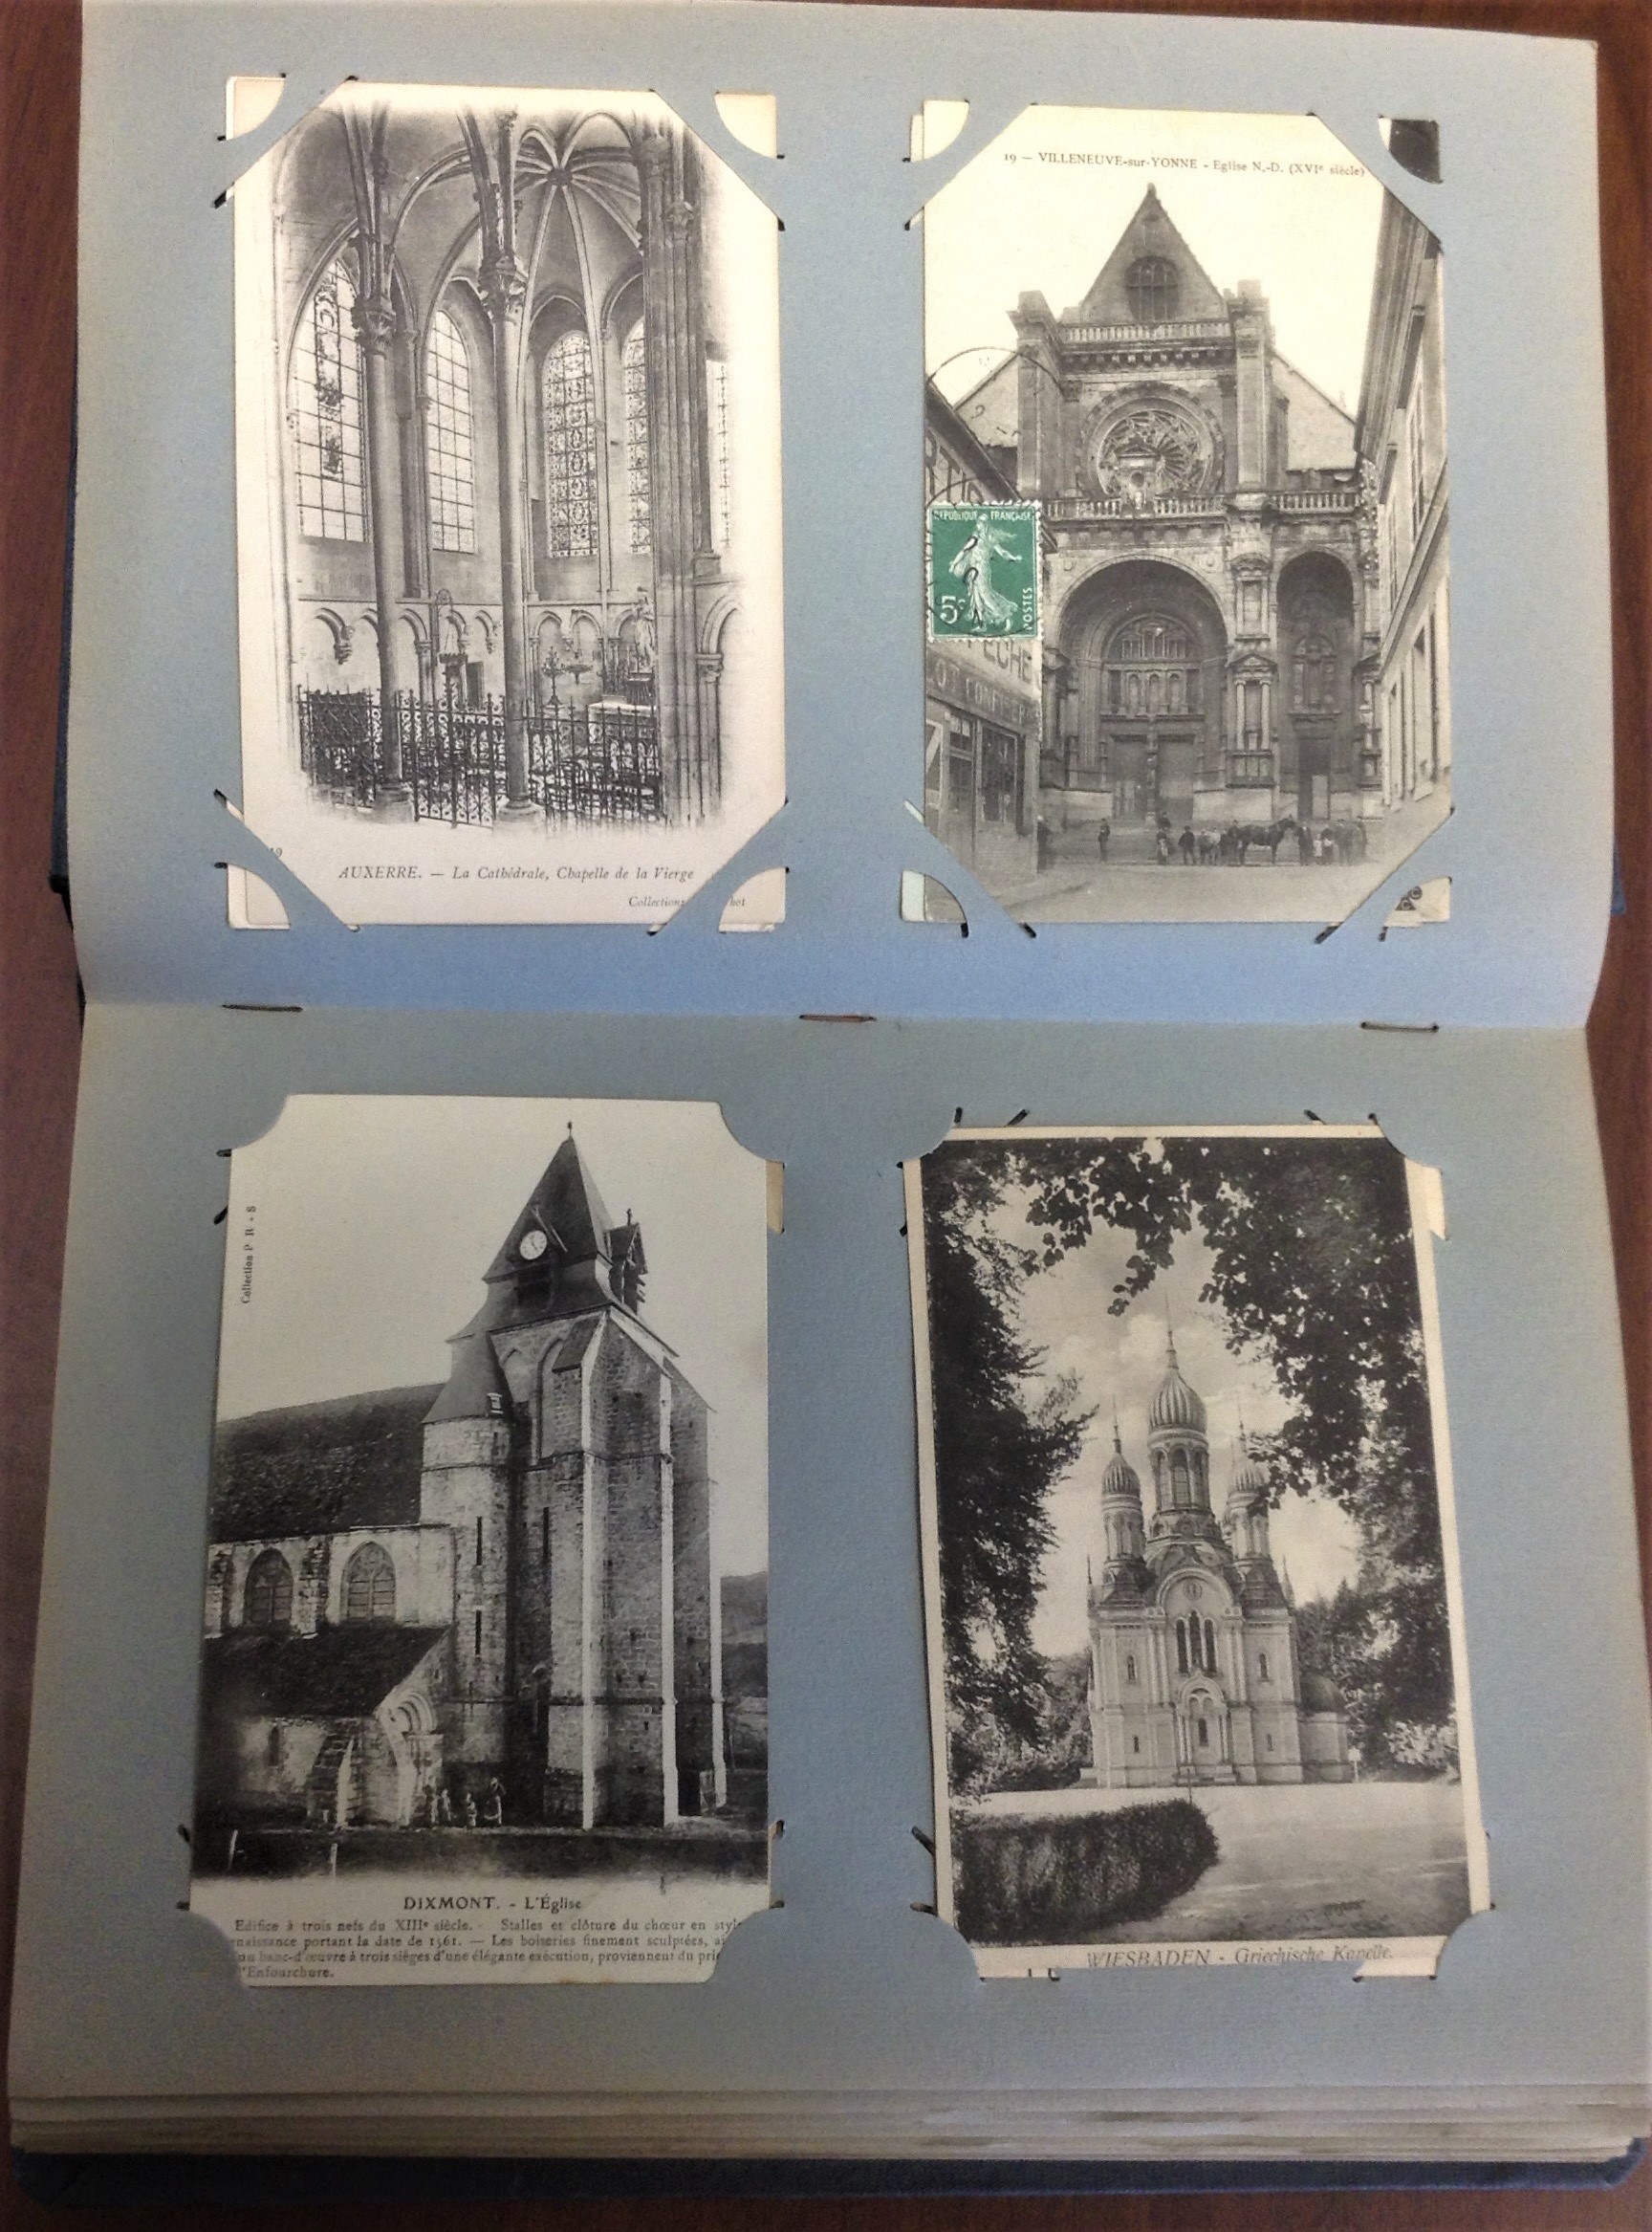 4 photographs of church facades